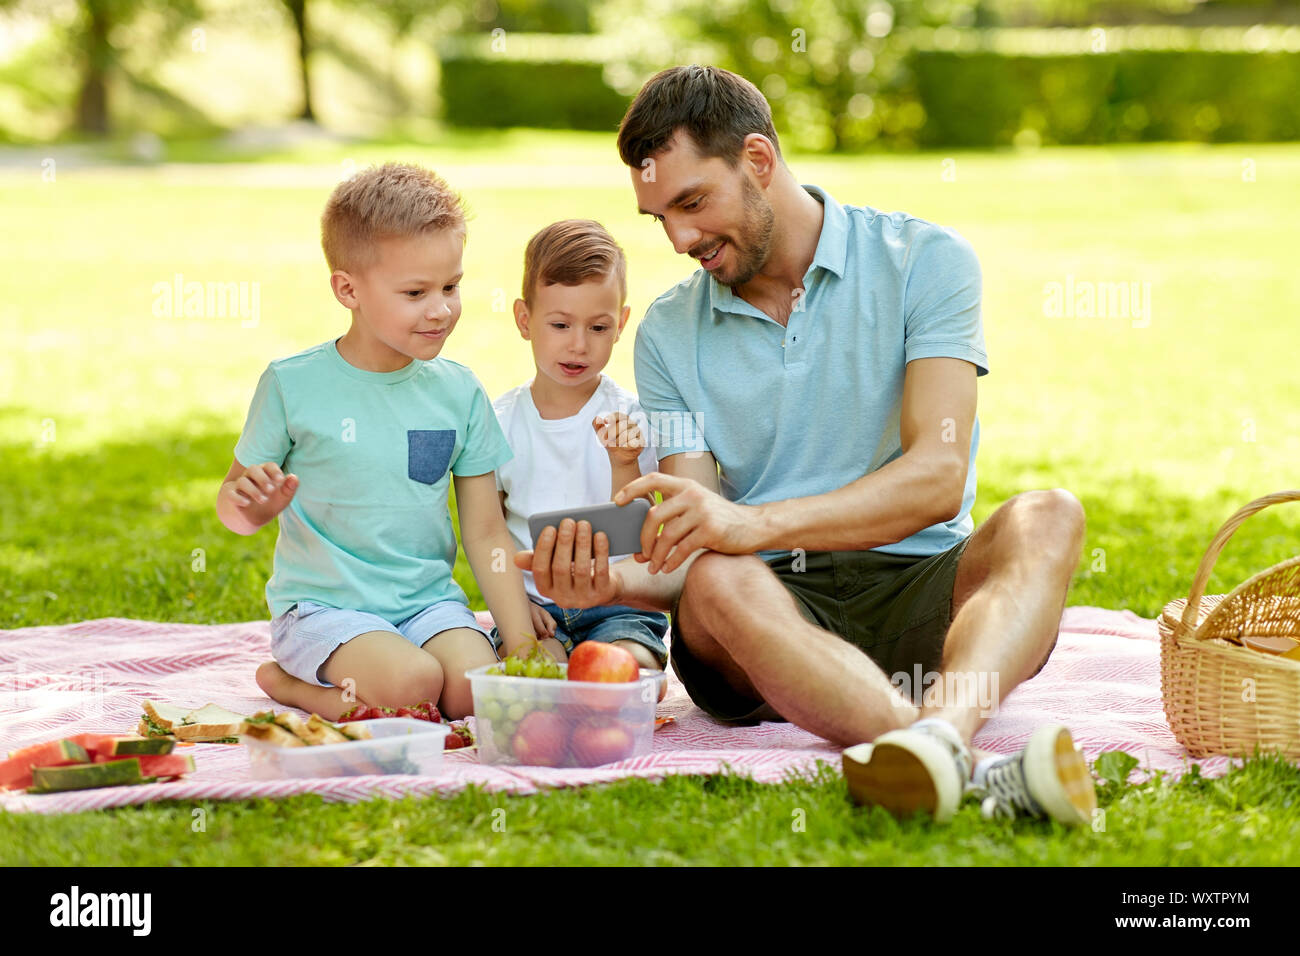 Familie, Freizeit und Personen Konzept - glücklicher Vater und zwei kleinen Söhnen mit Smartphone mit Picknick im Sommer Park Stockfoto